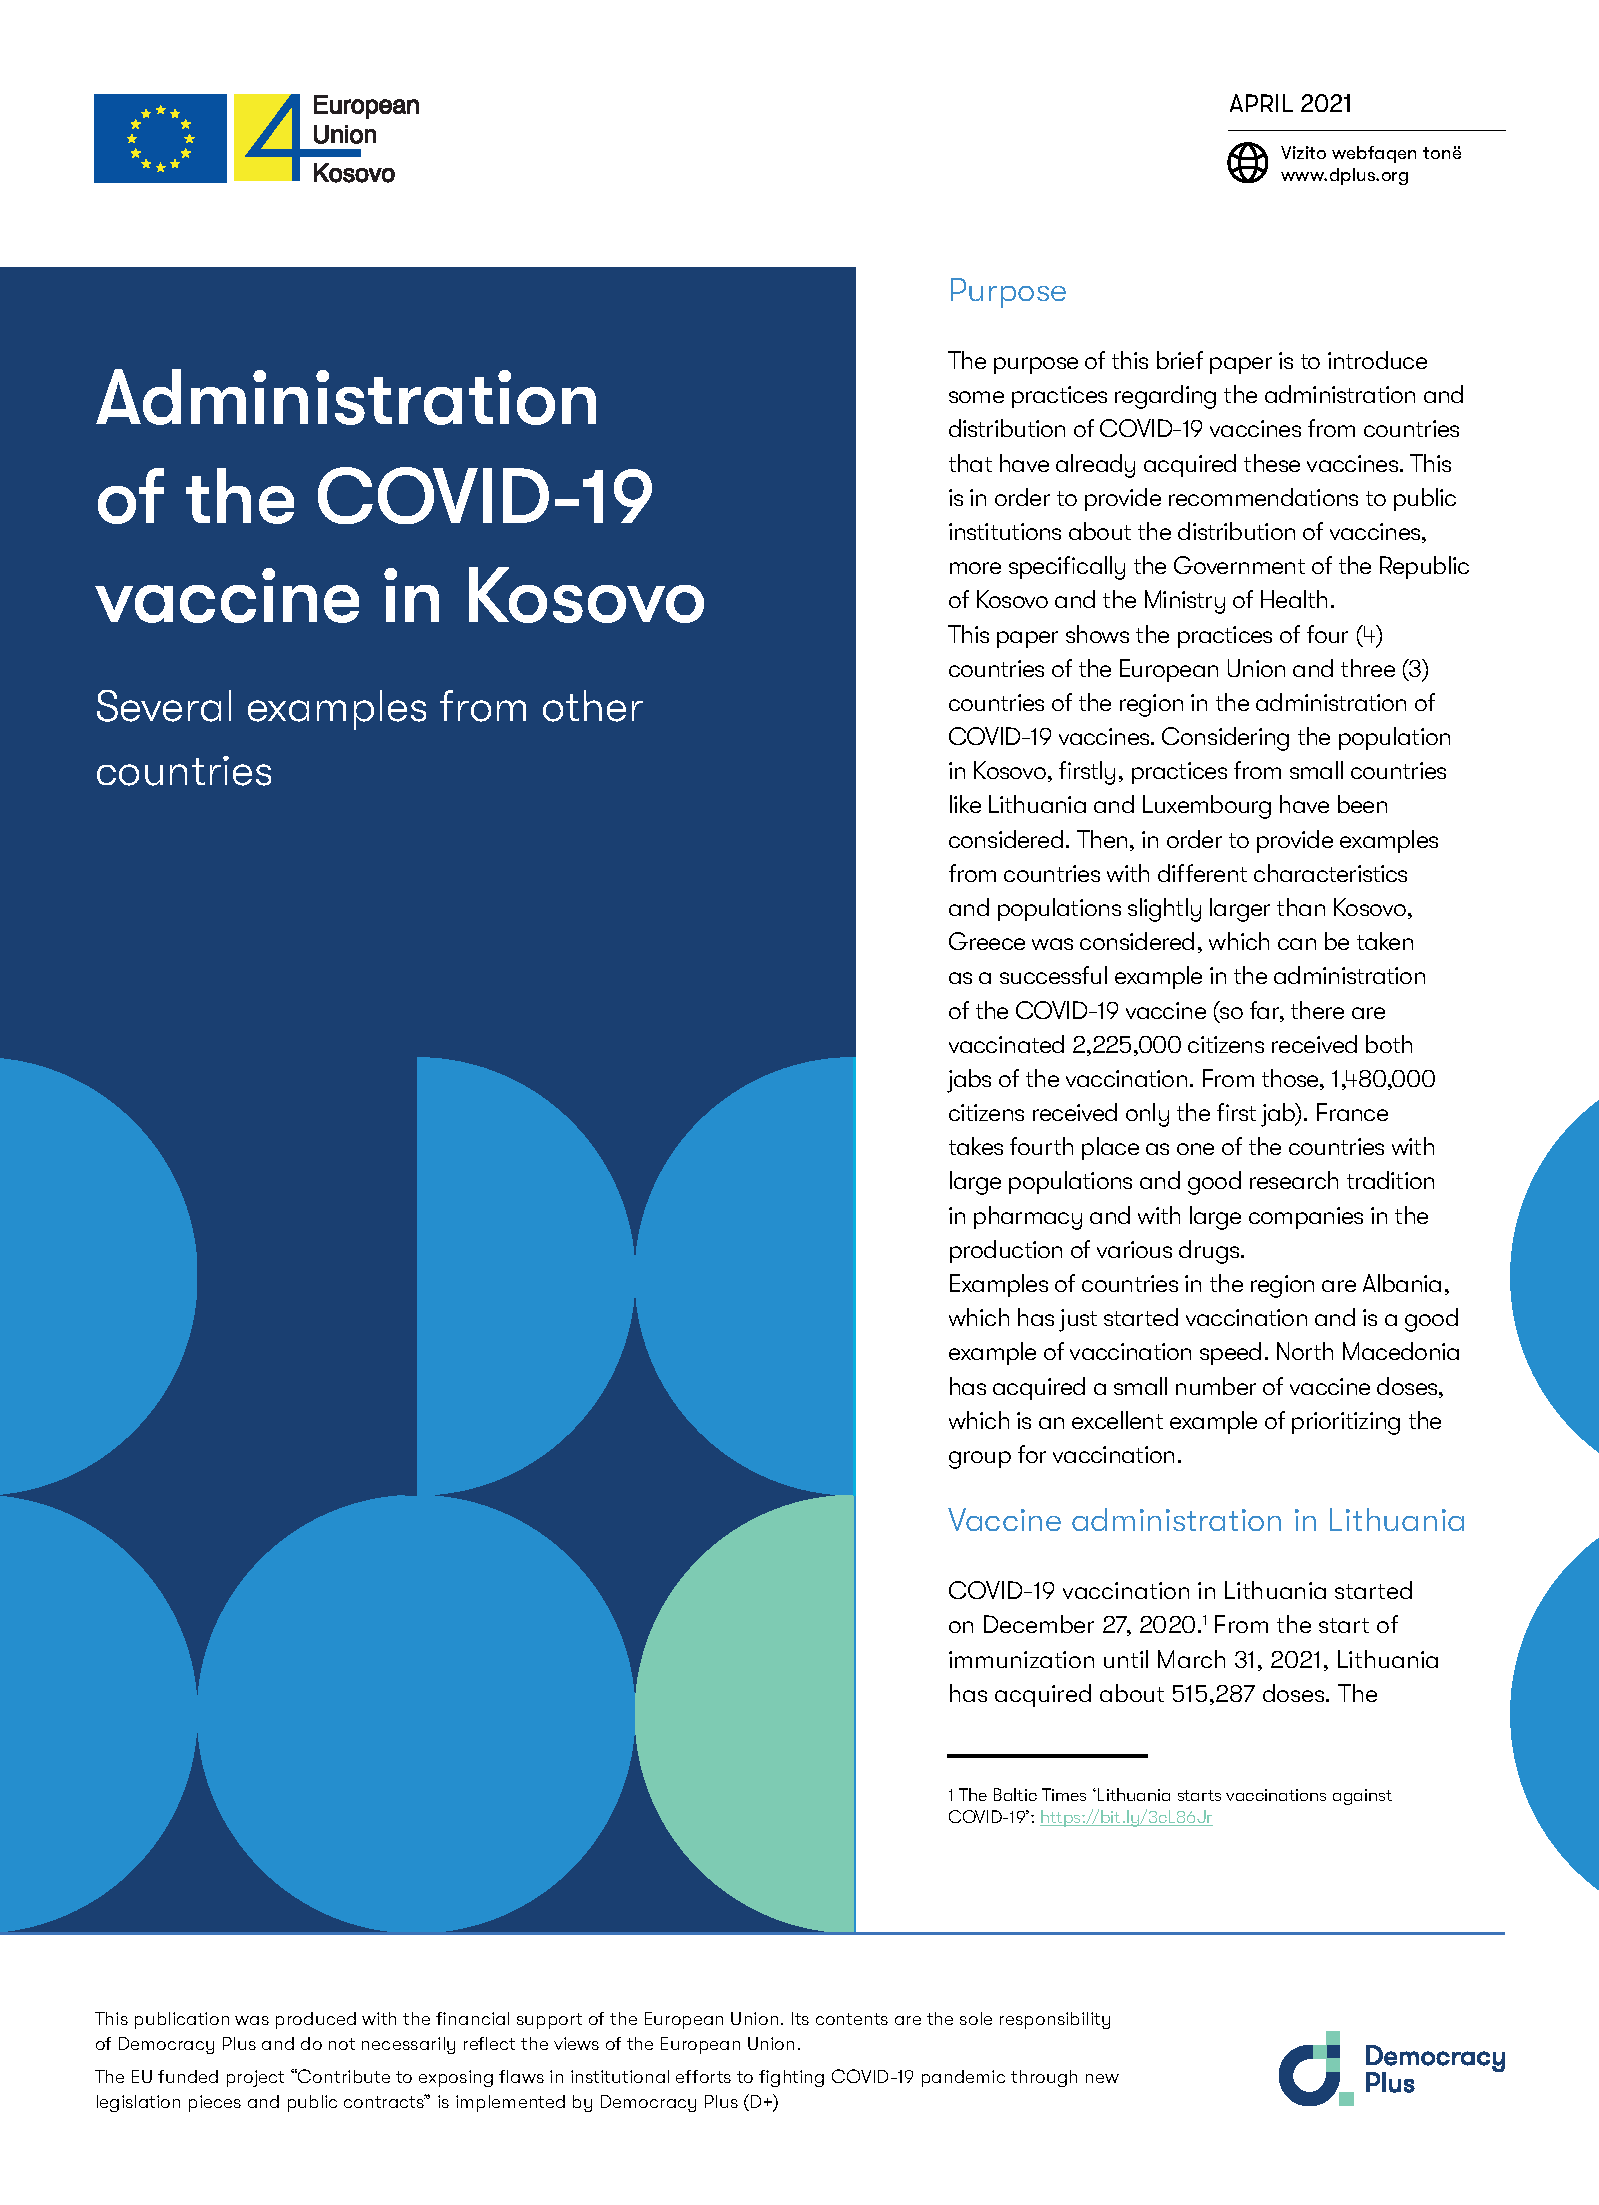 Administration of the COVID-19 vaccine in Kosovo